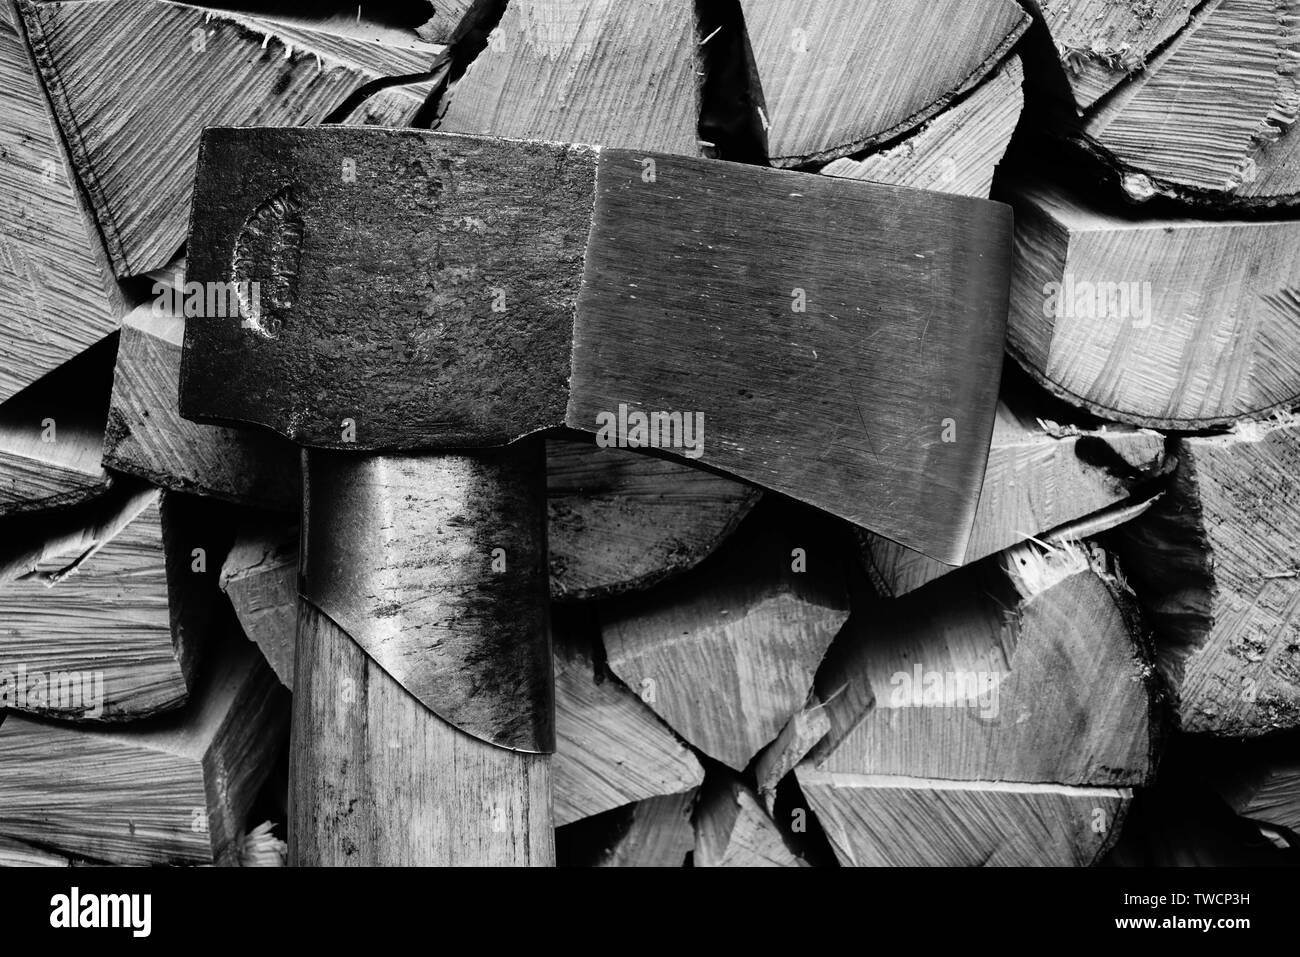 Small splitting axe made by Gransfors Bruk Stock Photo